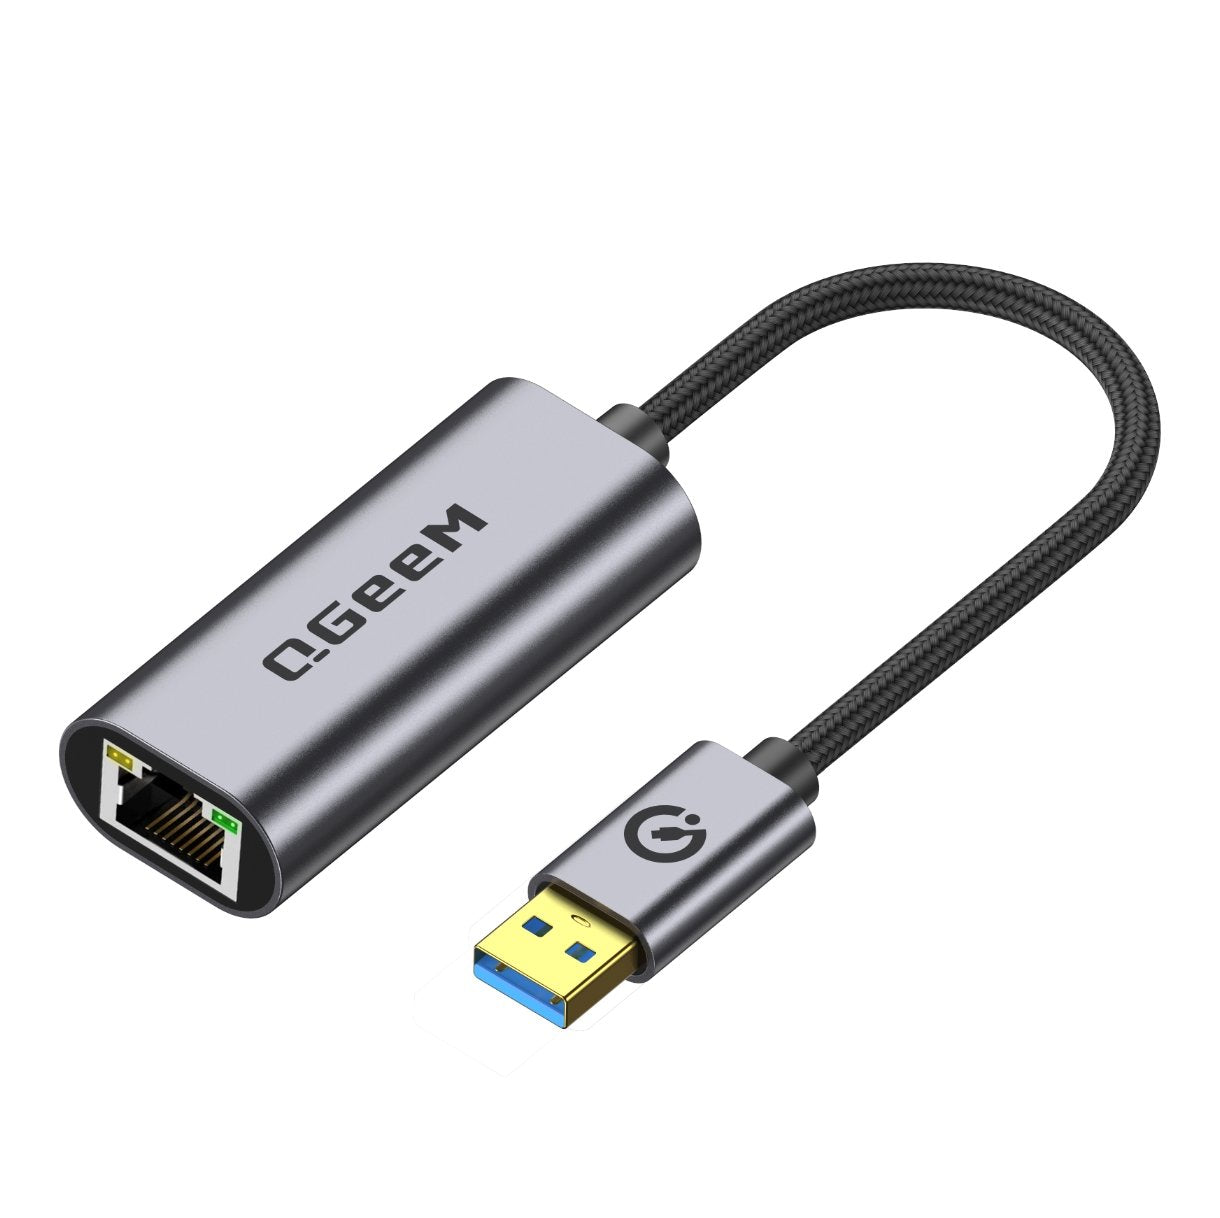 UGREEN Adaptateur USB Ethernet Gigabit USB 3.0 vers RJ45 1000Mbps